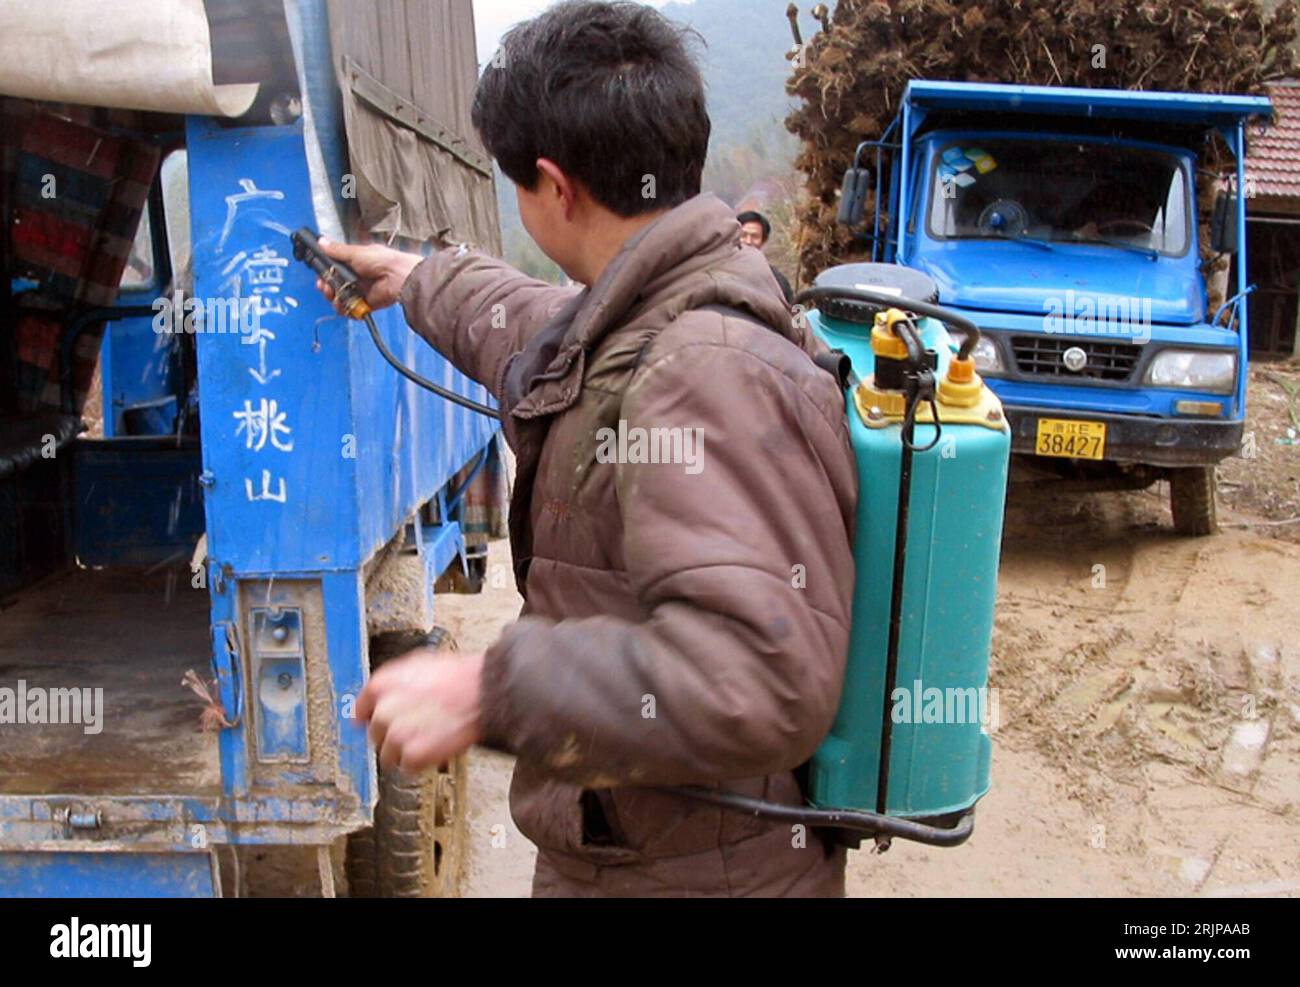 Bildnummer: 51136305 Datum: 28.02.2006 Copyright: imago/Xinhua Seuchenschutzmitarbeiter desinfiziert einen truck in Anji der Provinz Zhejiang, wo ein junges Mädchen mit H5N1 infiziert wurde PUBLICATIONxNOTxINxCHN, Personen; 2006, Anji, Provinz Zhejiang, Anyi, Epidemie, Epidemien, Seuche, Seuchen, H5N1, Vogelseuche, Vogelseuchen, Vorbeugung, Vorsorgemaßnahmen, Vorsorgemaßnahmen, Schutzmaßnahme, Schutzmaßnahme, desinfizieren, desinfizierend, Desinfektion, desinfiziert; , quer, Kbdig, Einzelbild, close, China, / Bekämpfung, bekämpfen Foto Stock